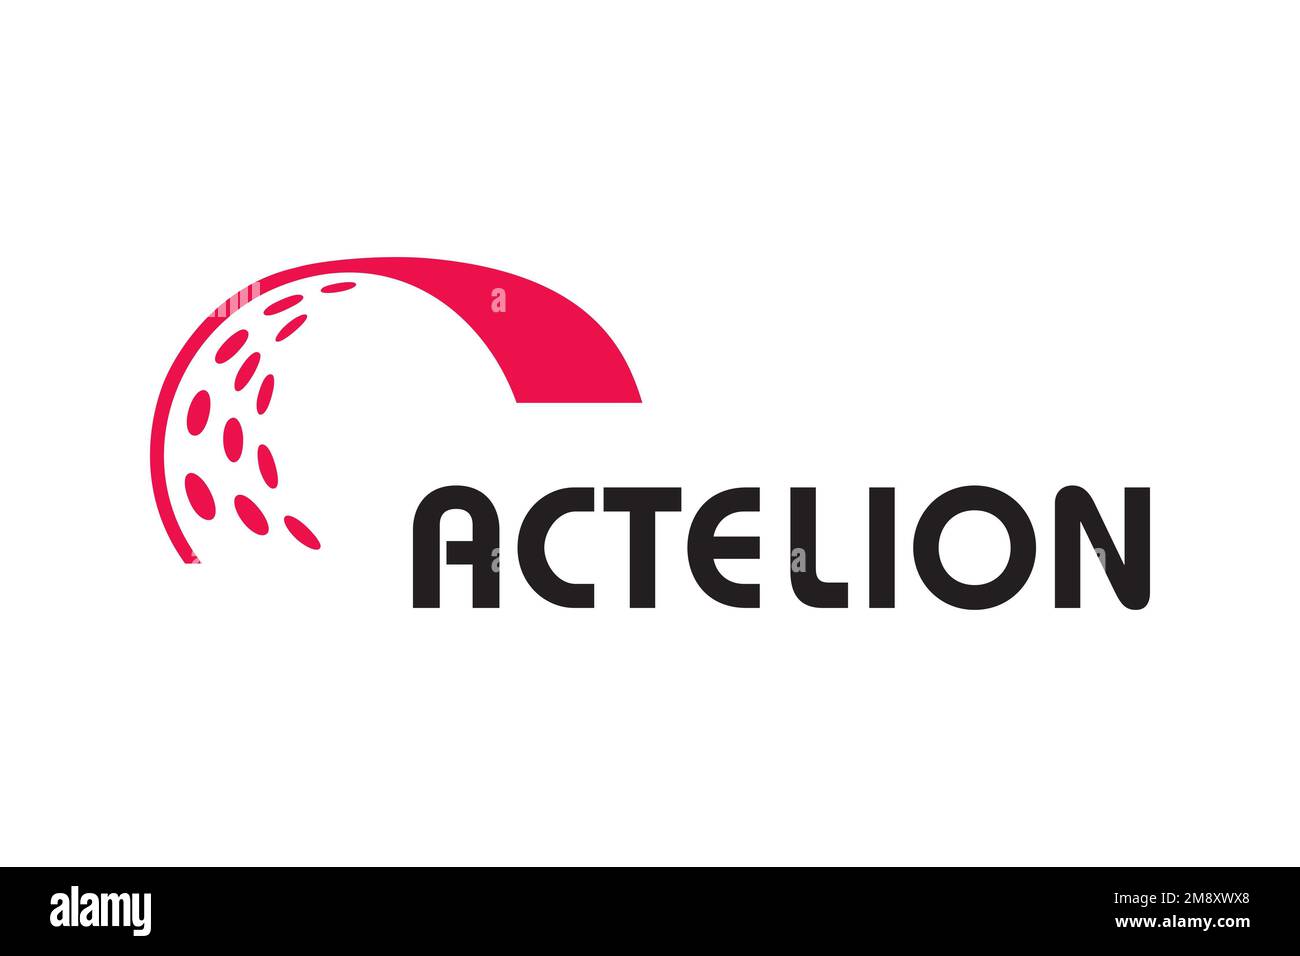 Actelion, Logo, White background Stock Photo